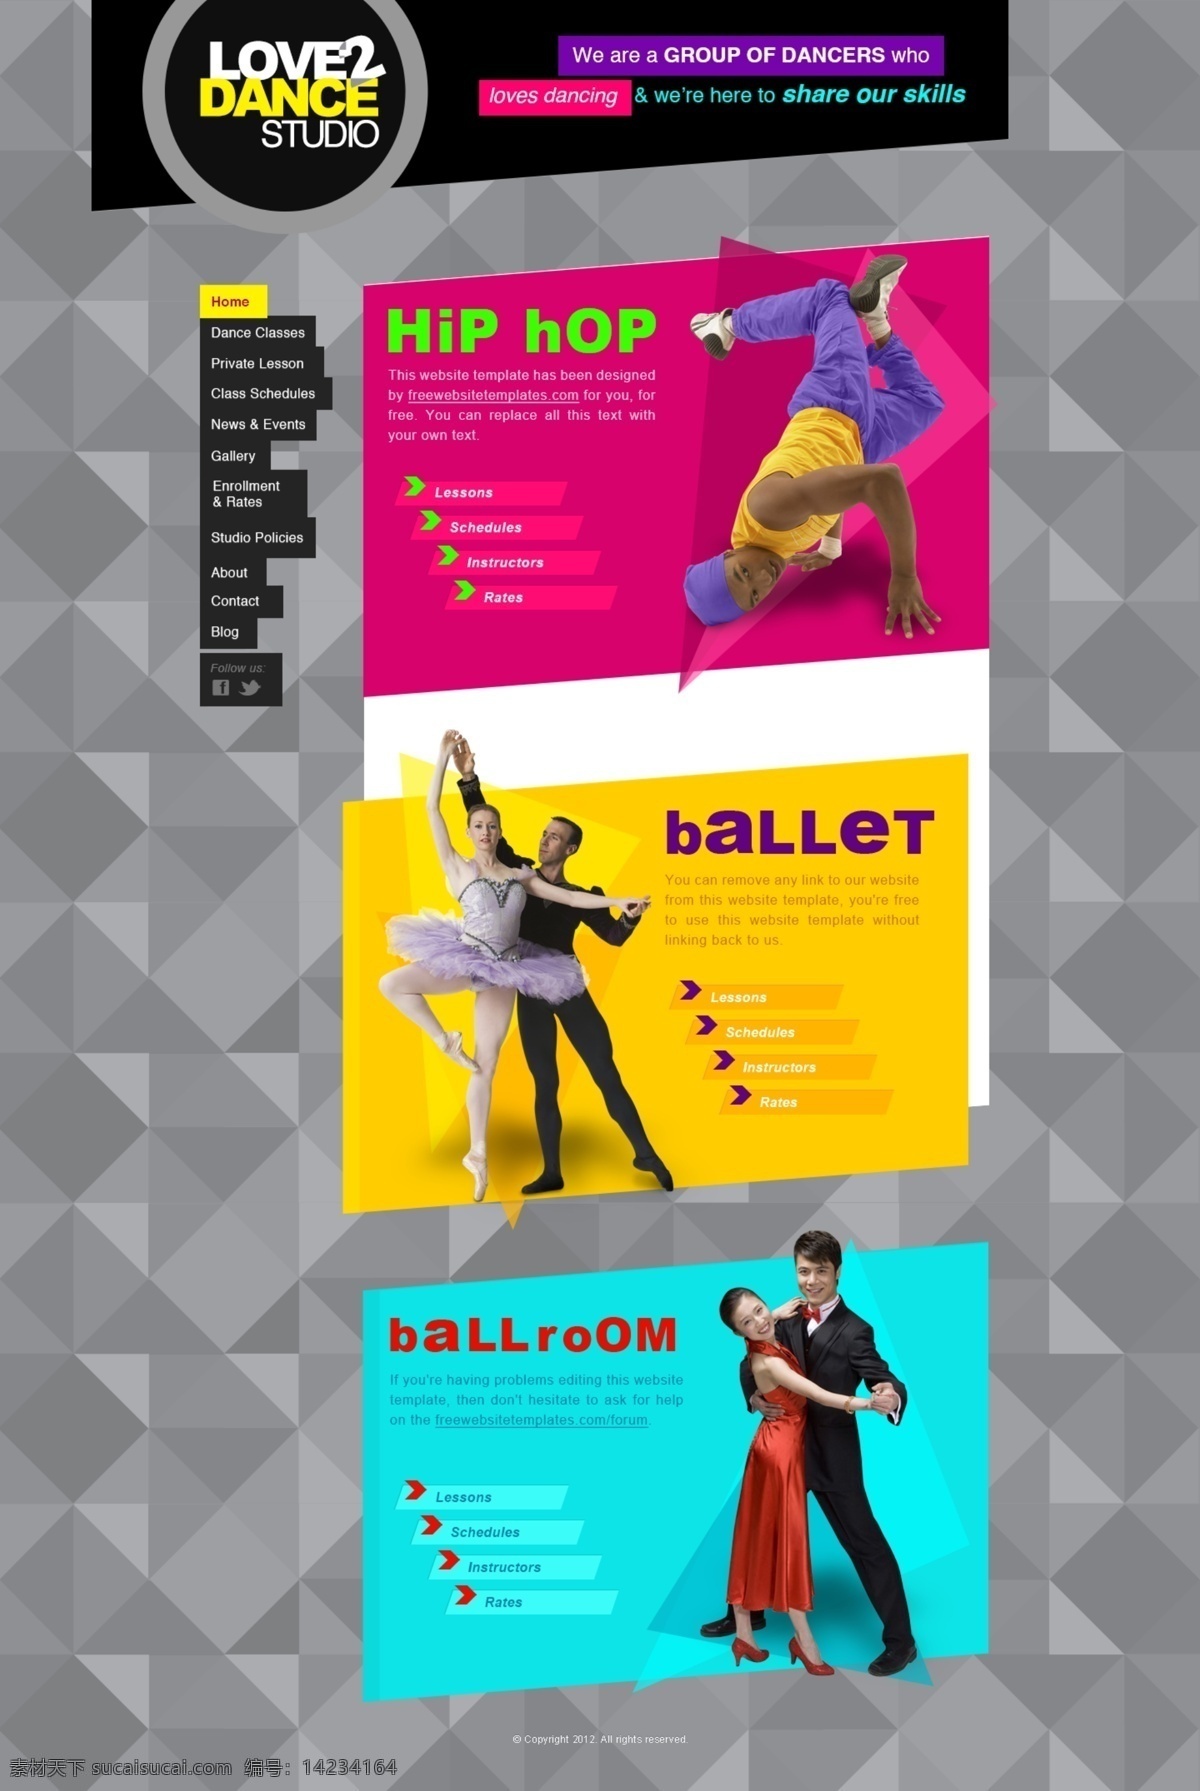 国外 舞蹈 网站首页 舞蹈网站 国外网站 首页设计 多彩设计 灰色